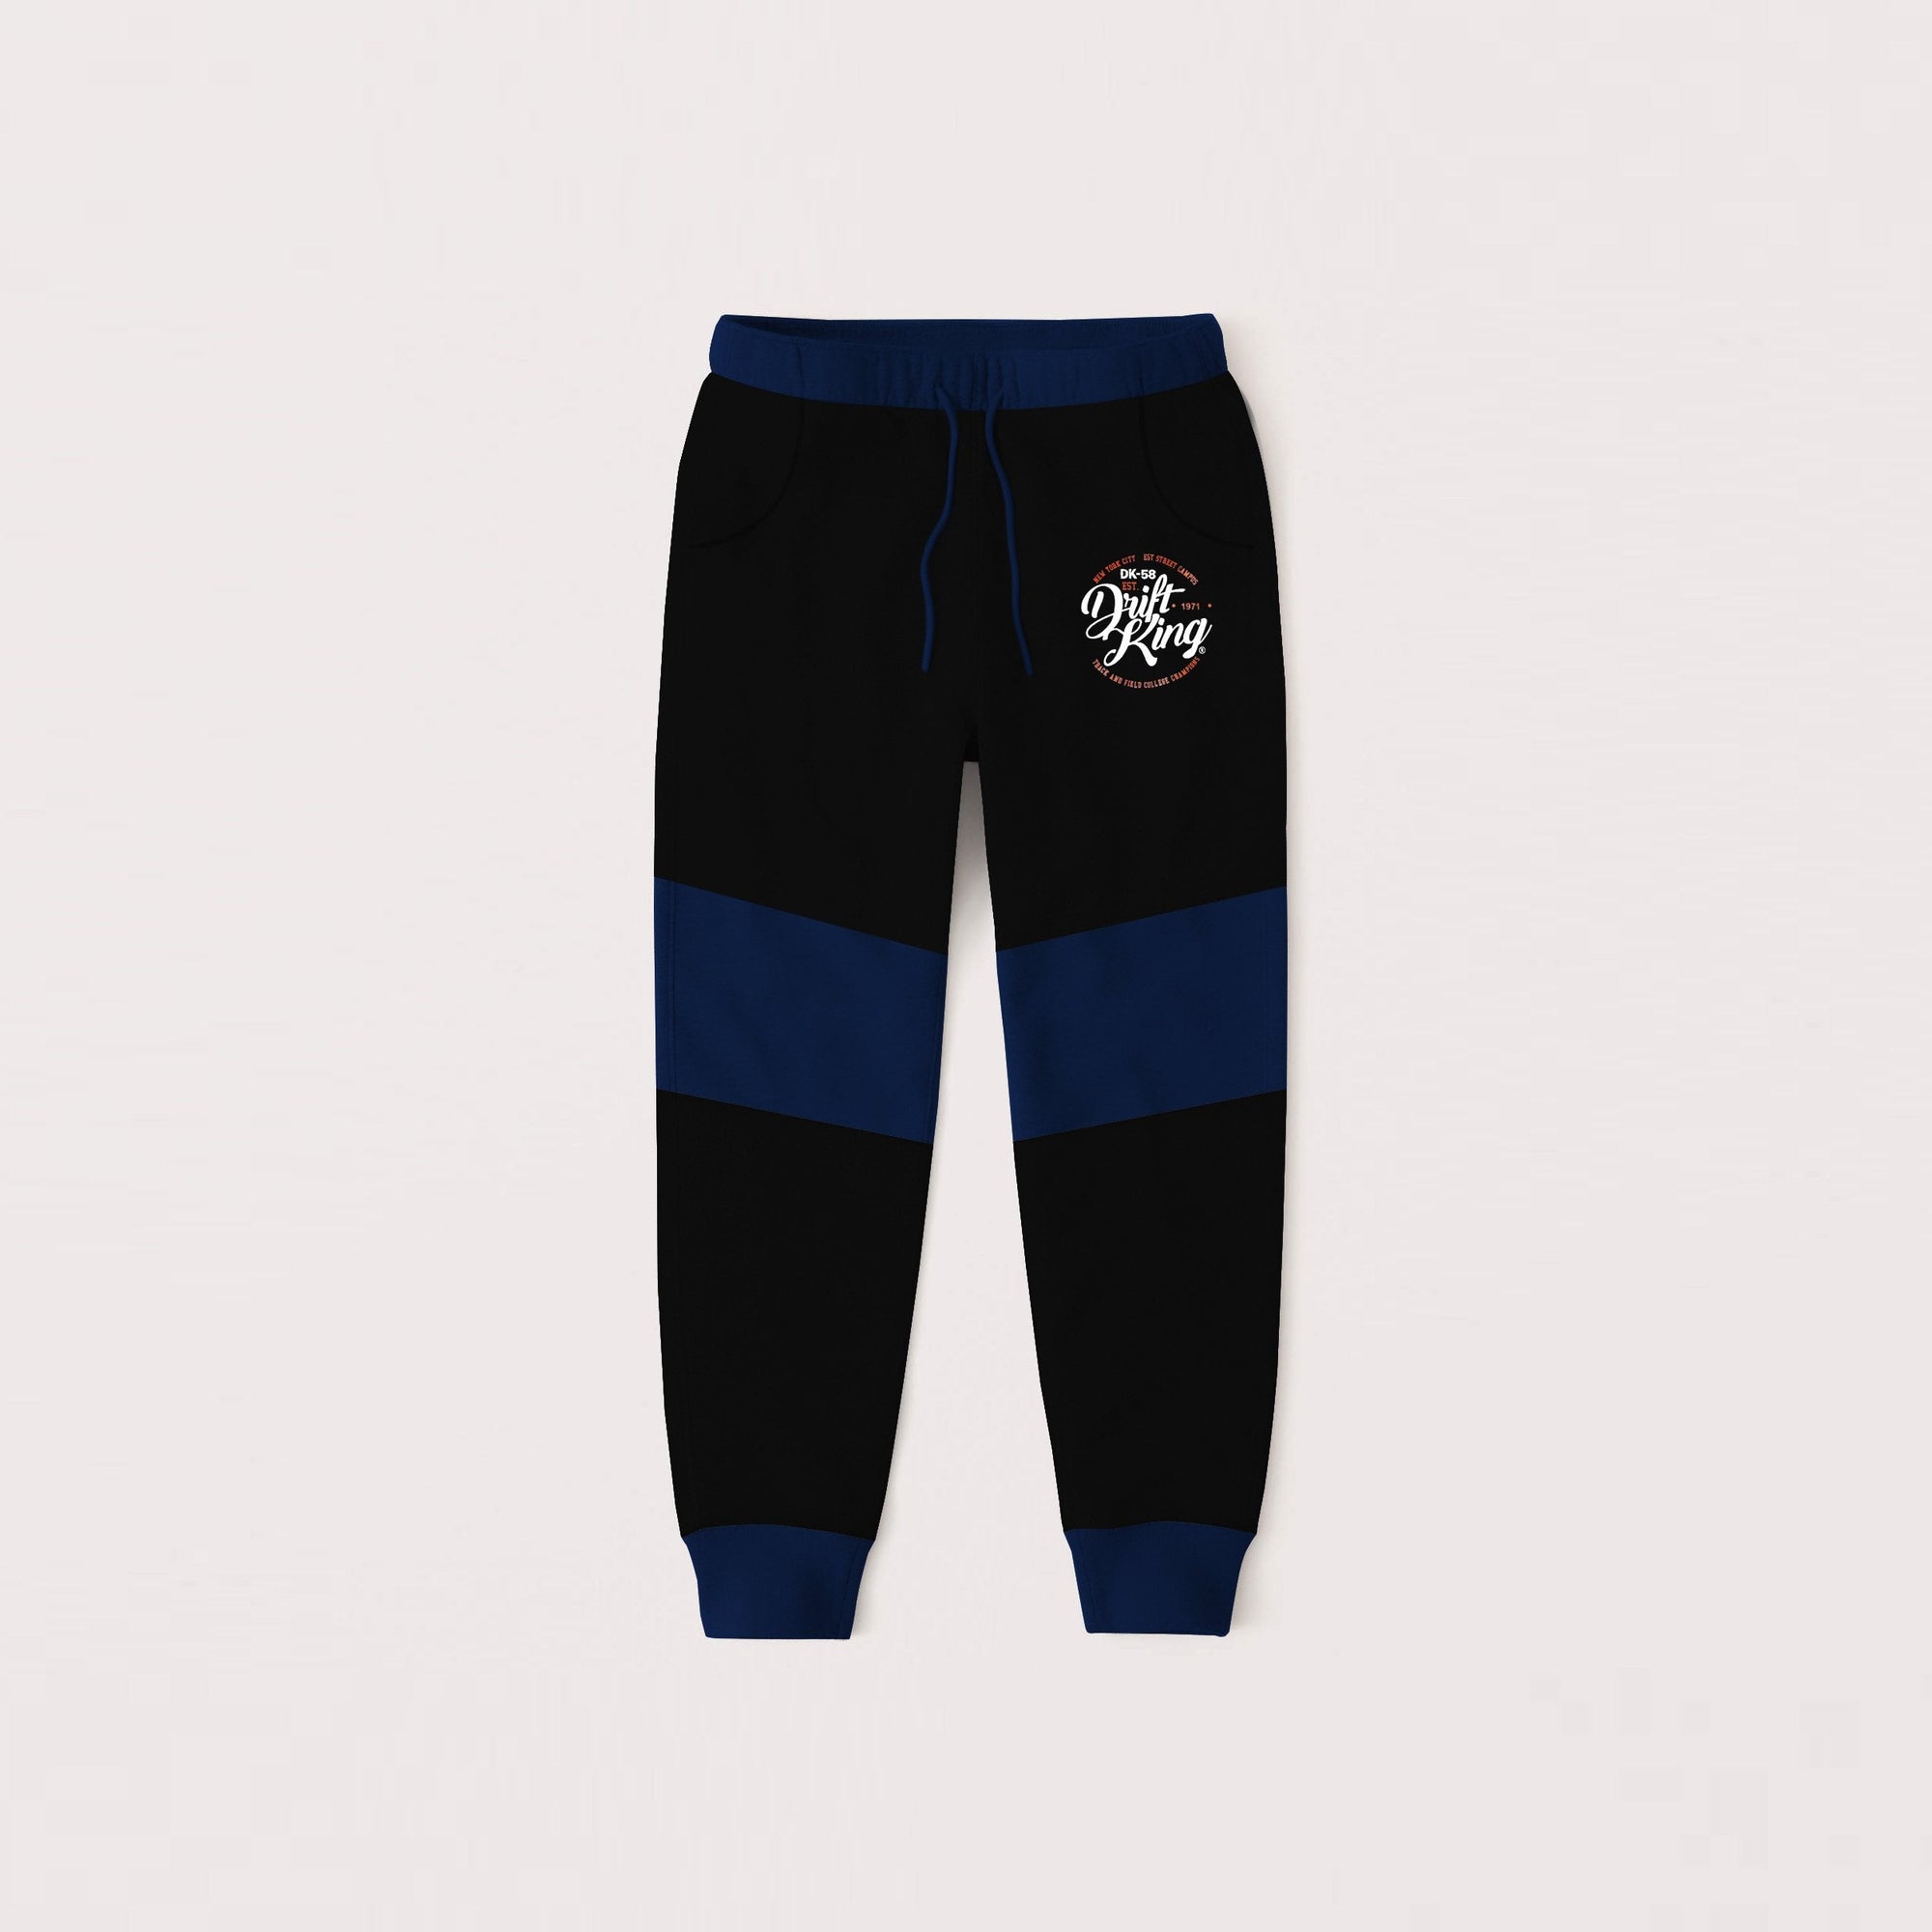 Drift King Slim Fit Terry Fleece Jogger Trouser For Kids-Black & Blue-NA12480